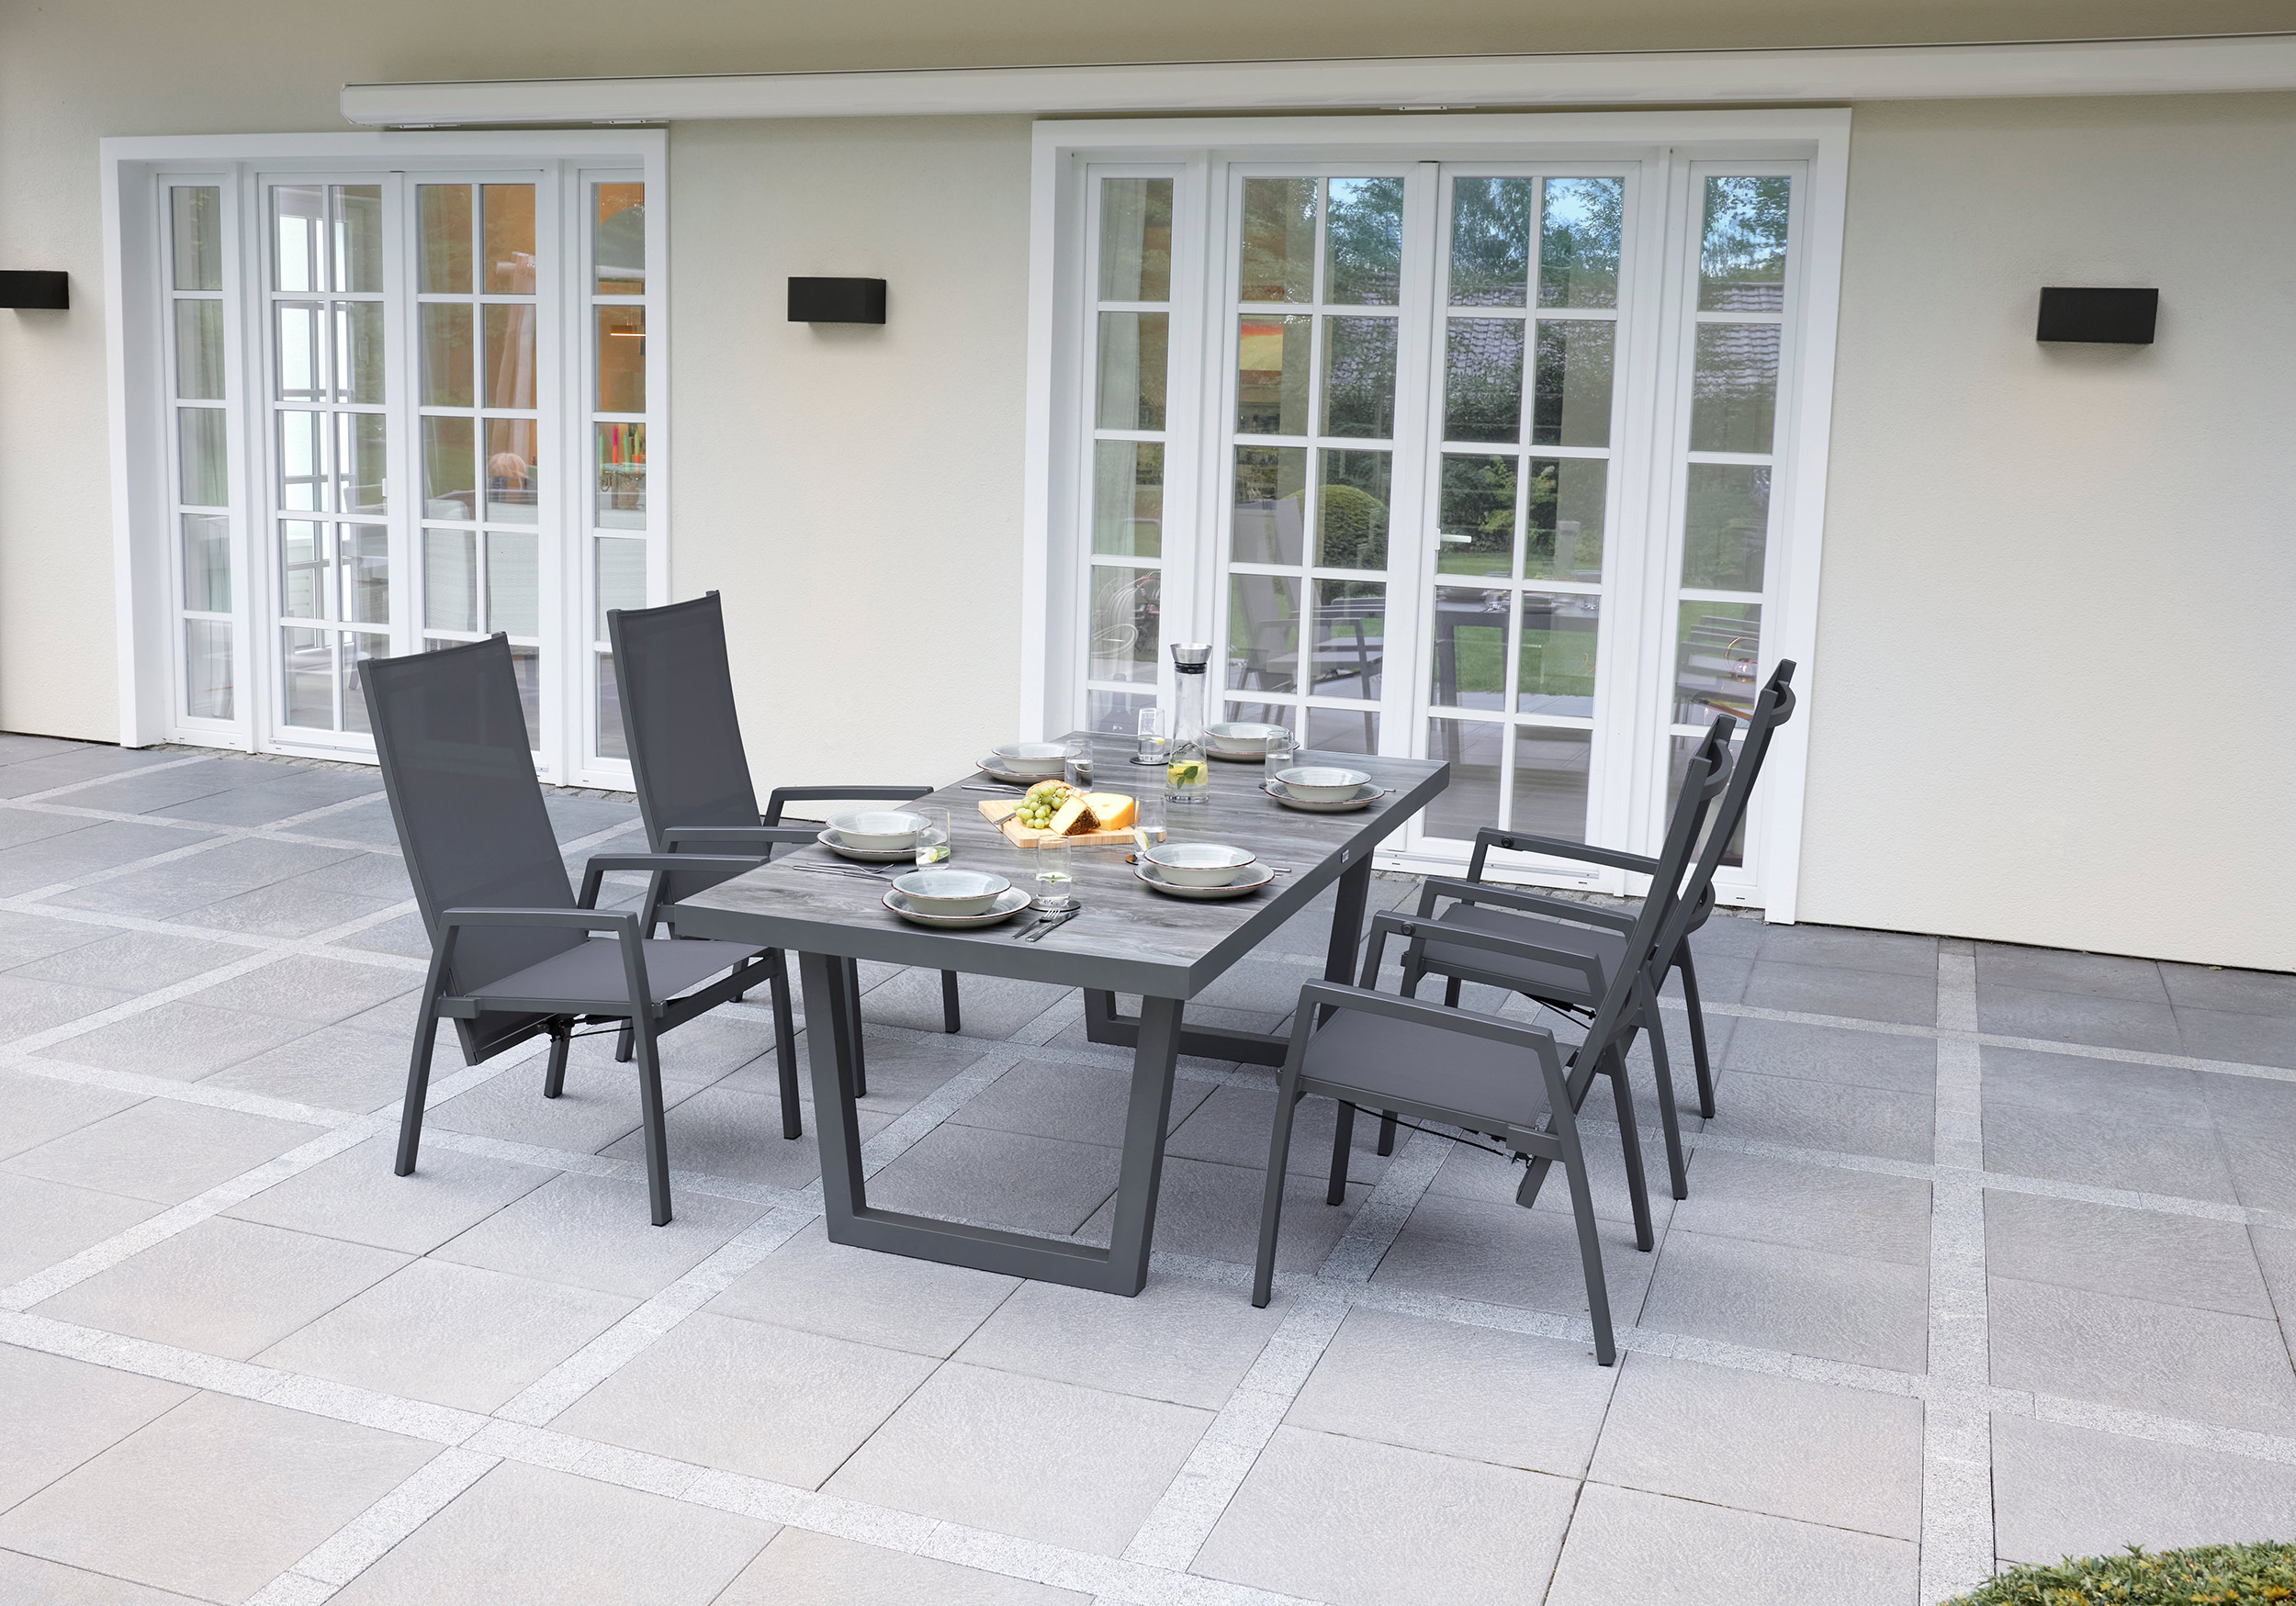 LC Garden »Bondino« Dining 4er Set Positionsstuhl Verstellsessel Textilien grau